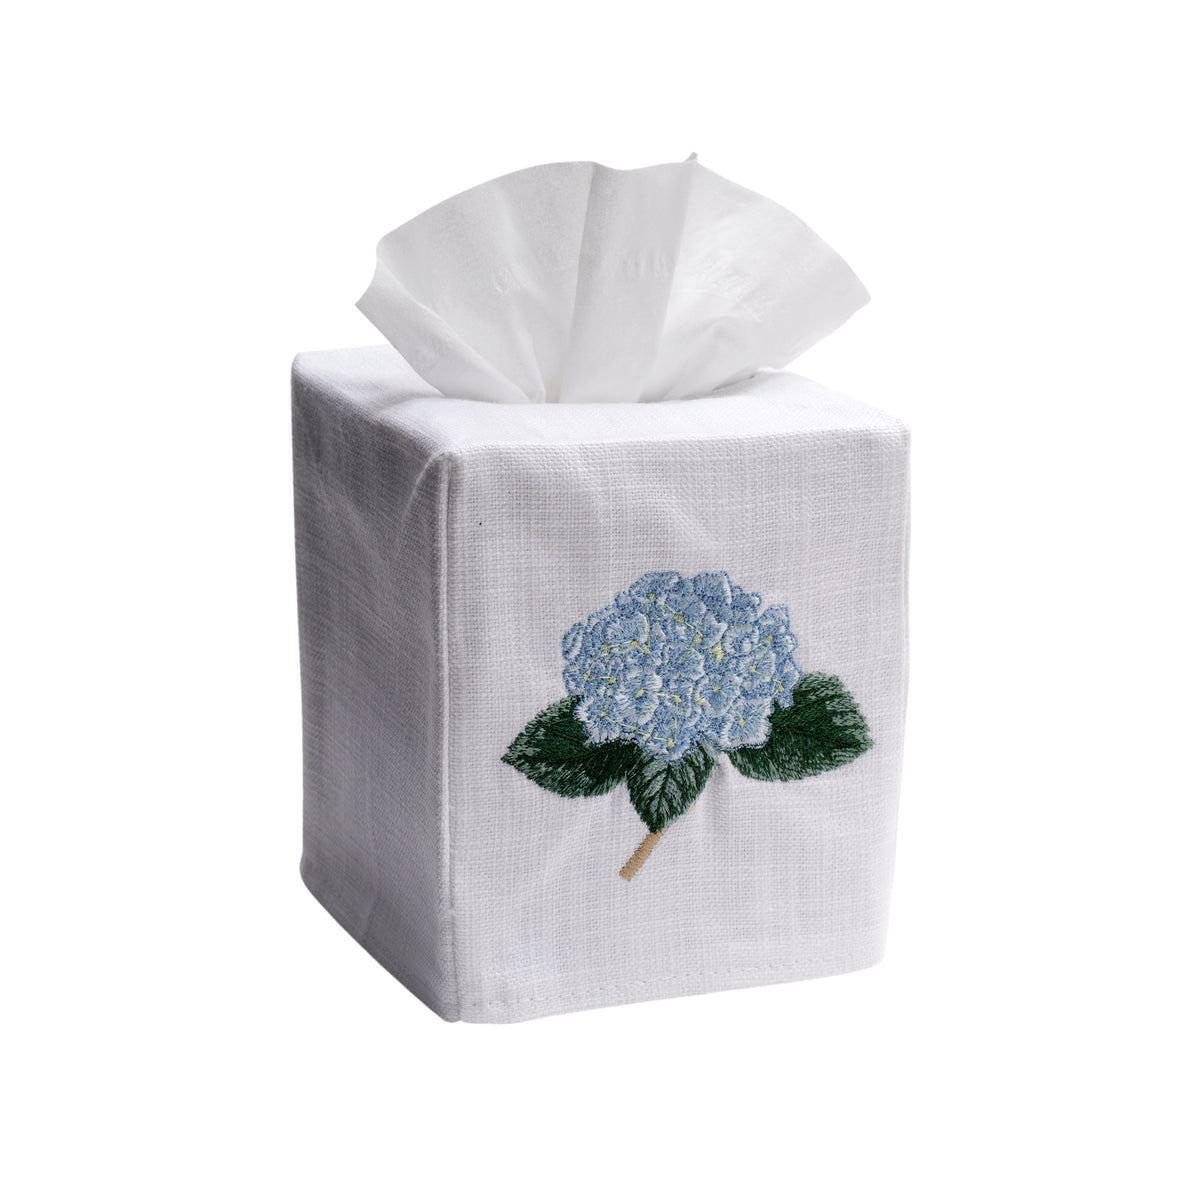 Cotton Tissue Box Cover